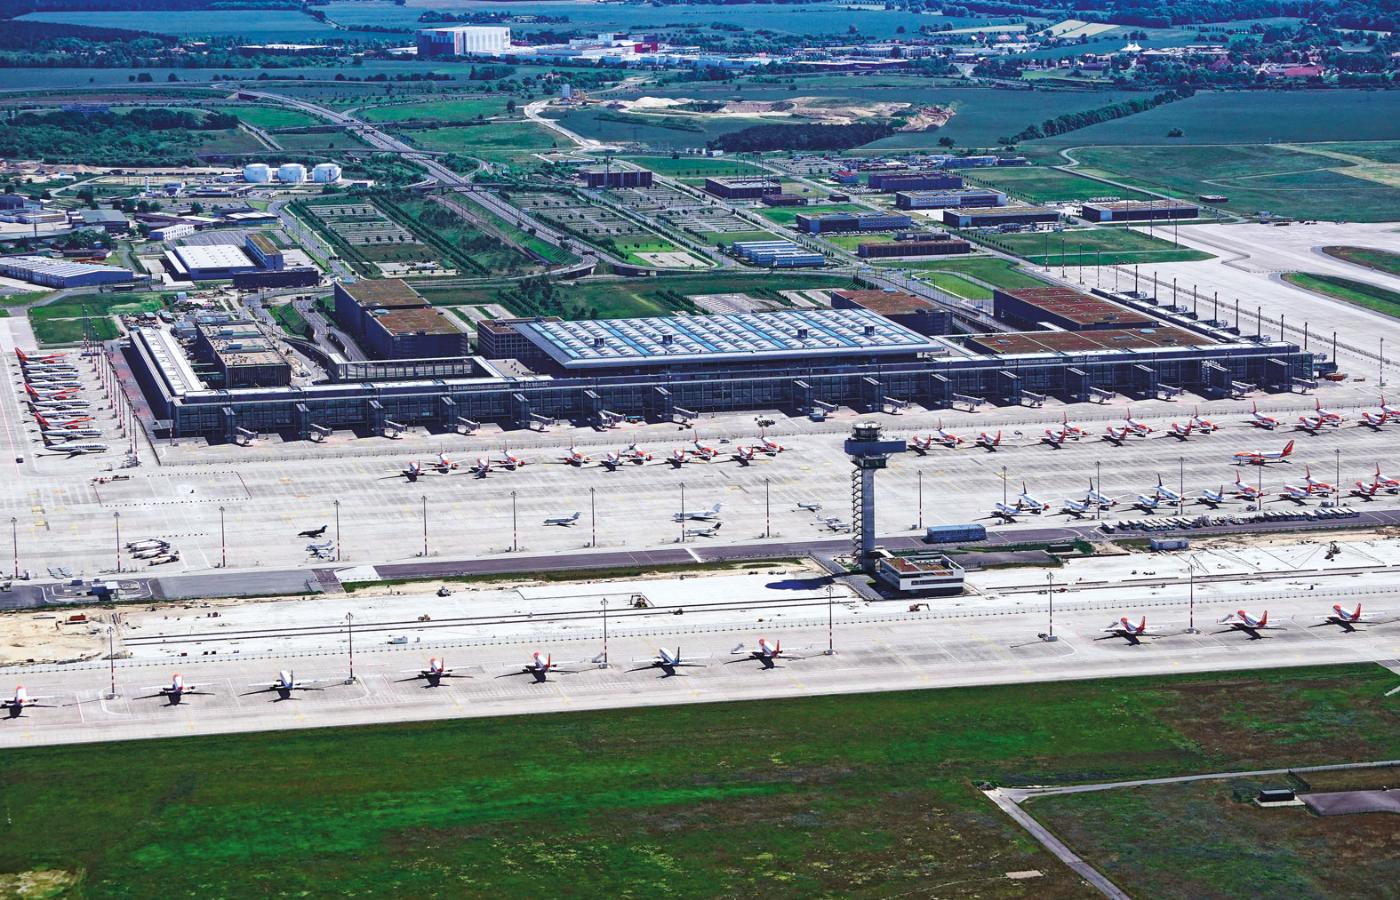 Lotnisko Berlin Brandenburg i samoloty pasażerskie, które z powodu koronawirusa mają przerwę w lataniu.